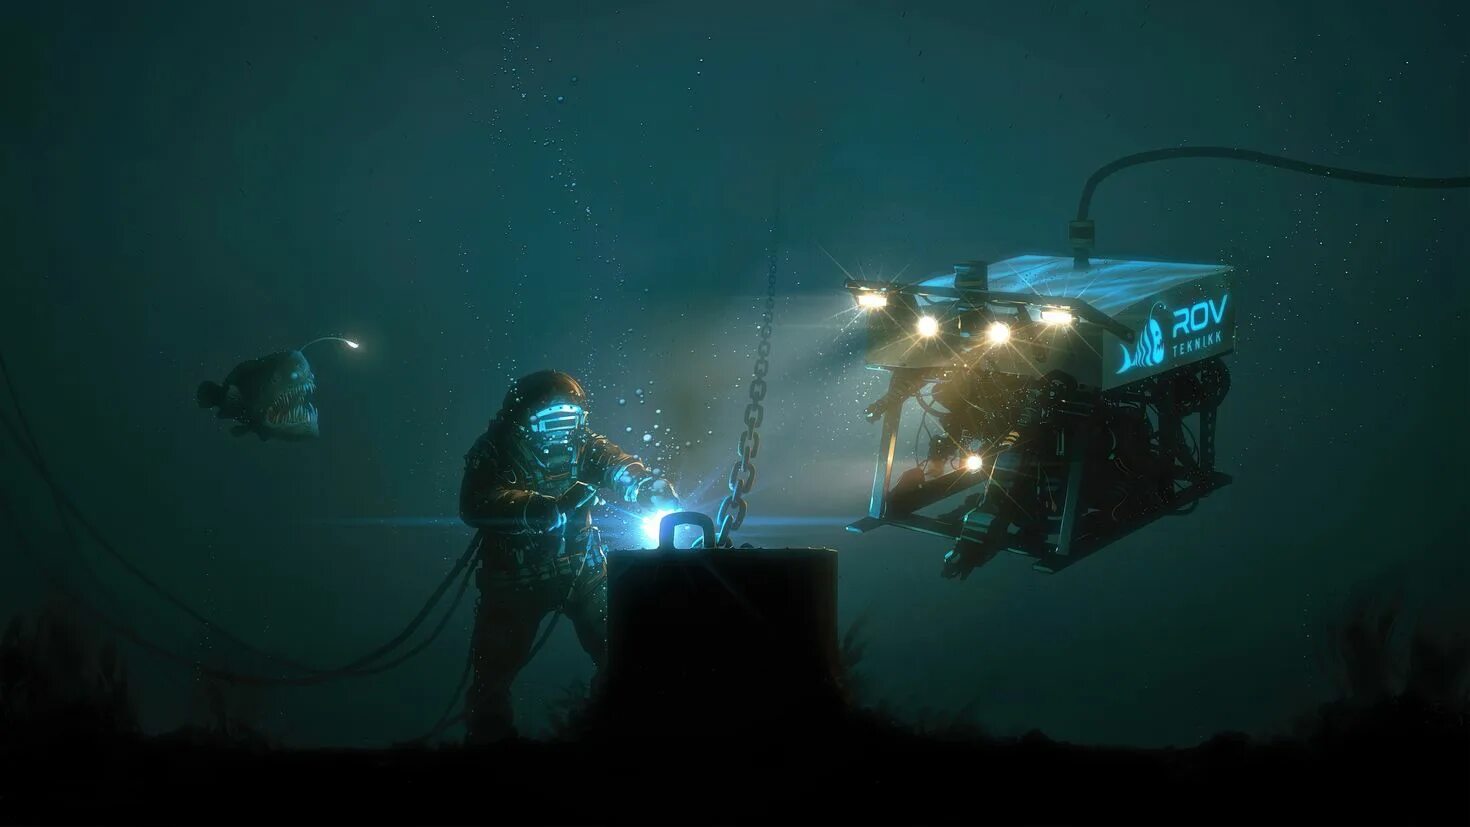 Подводный музей Джейсона де Кайрес Тейлора. ROV подводный аппарат. Подводный телеуправляемый аппарат "Гном". Телеуправляемые необитаемые подводные аппараты (ТНПА).